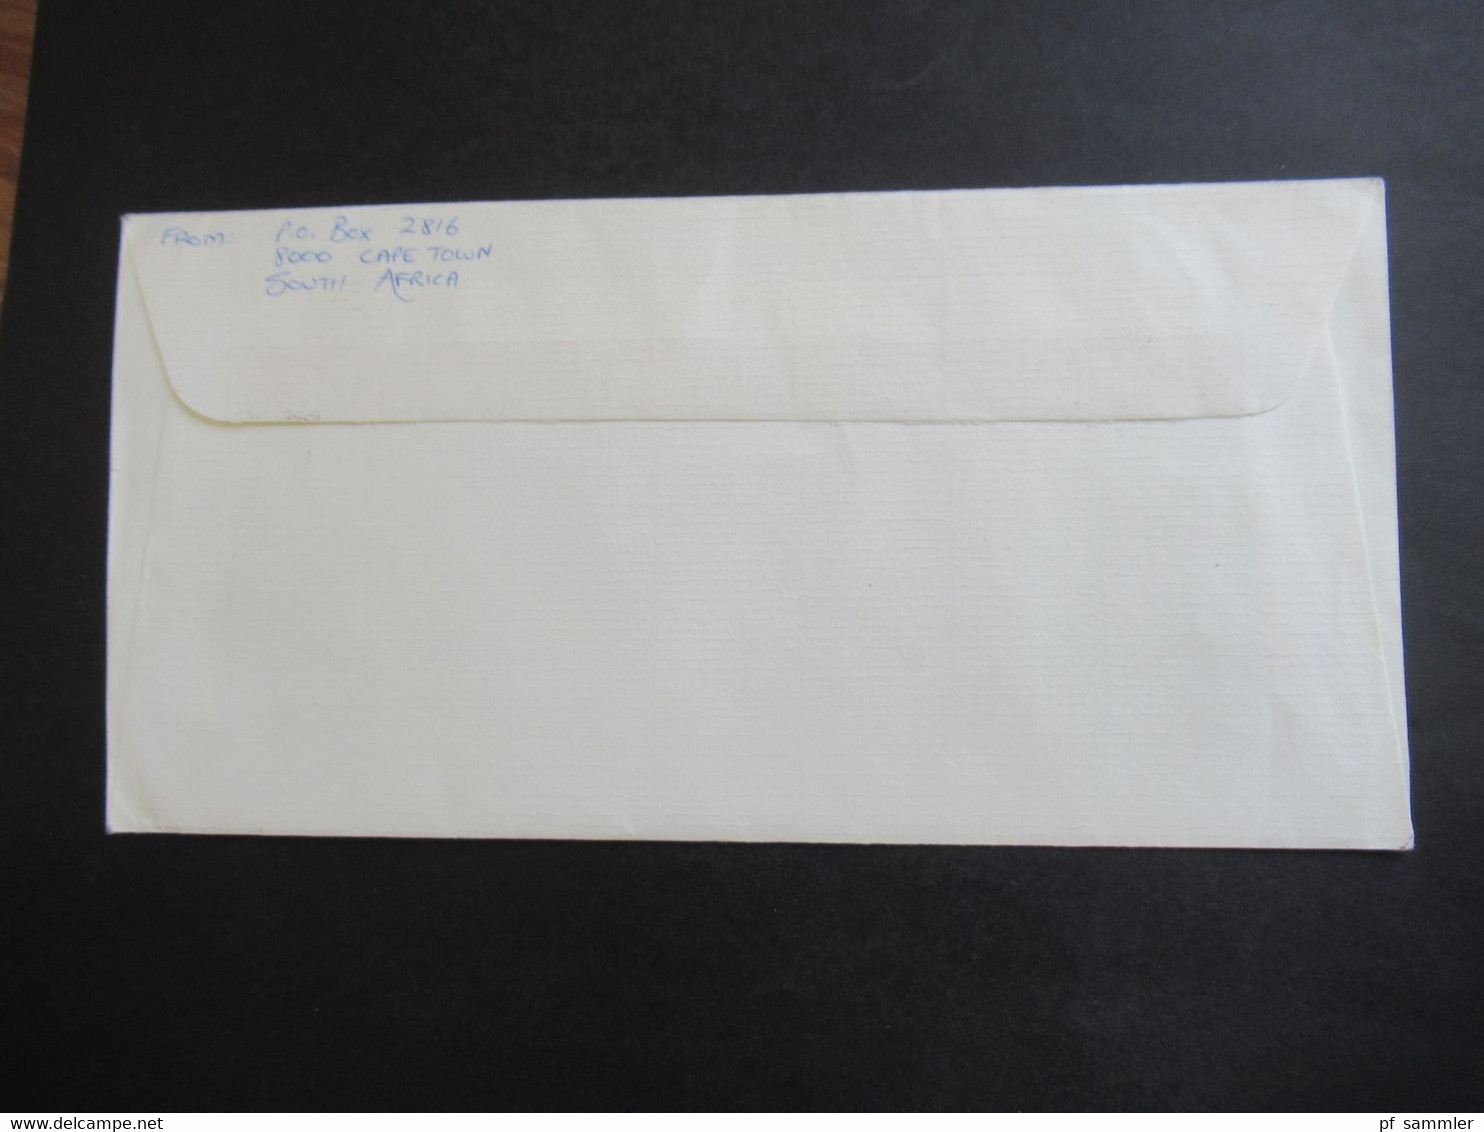 Afrika / RSA / Süd - Afrika 1984 / 85 Umschlag Parliament Parlement RSA By Airmail Nach Israel Gesendet - Briefe U. Dokumente